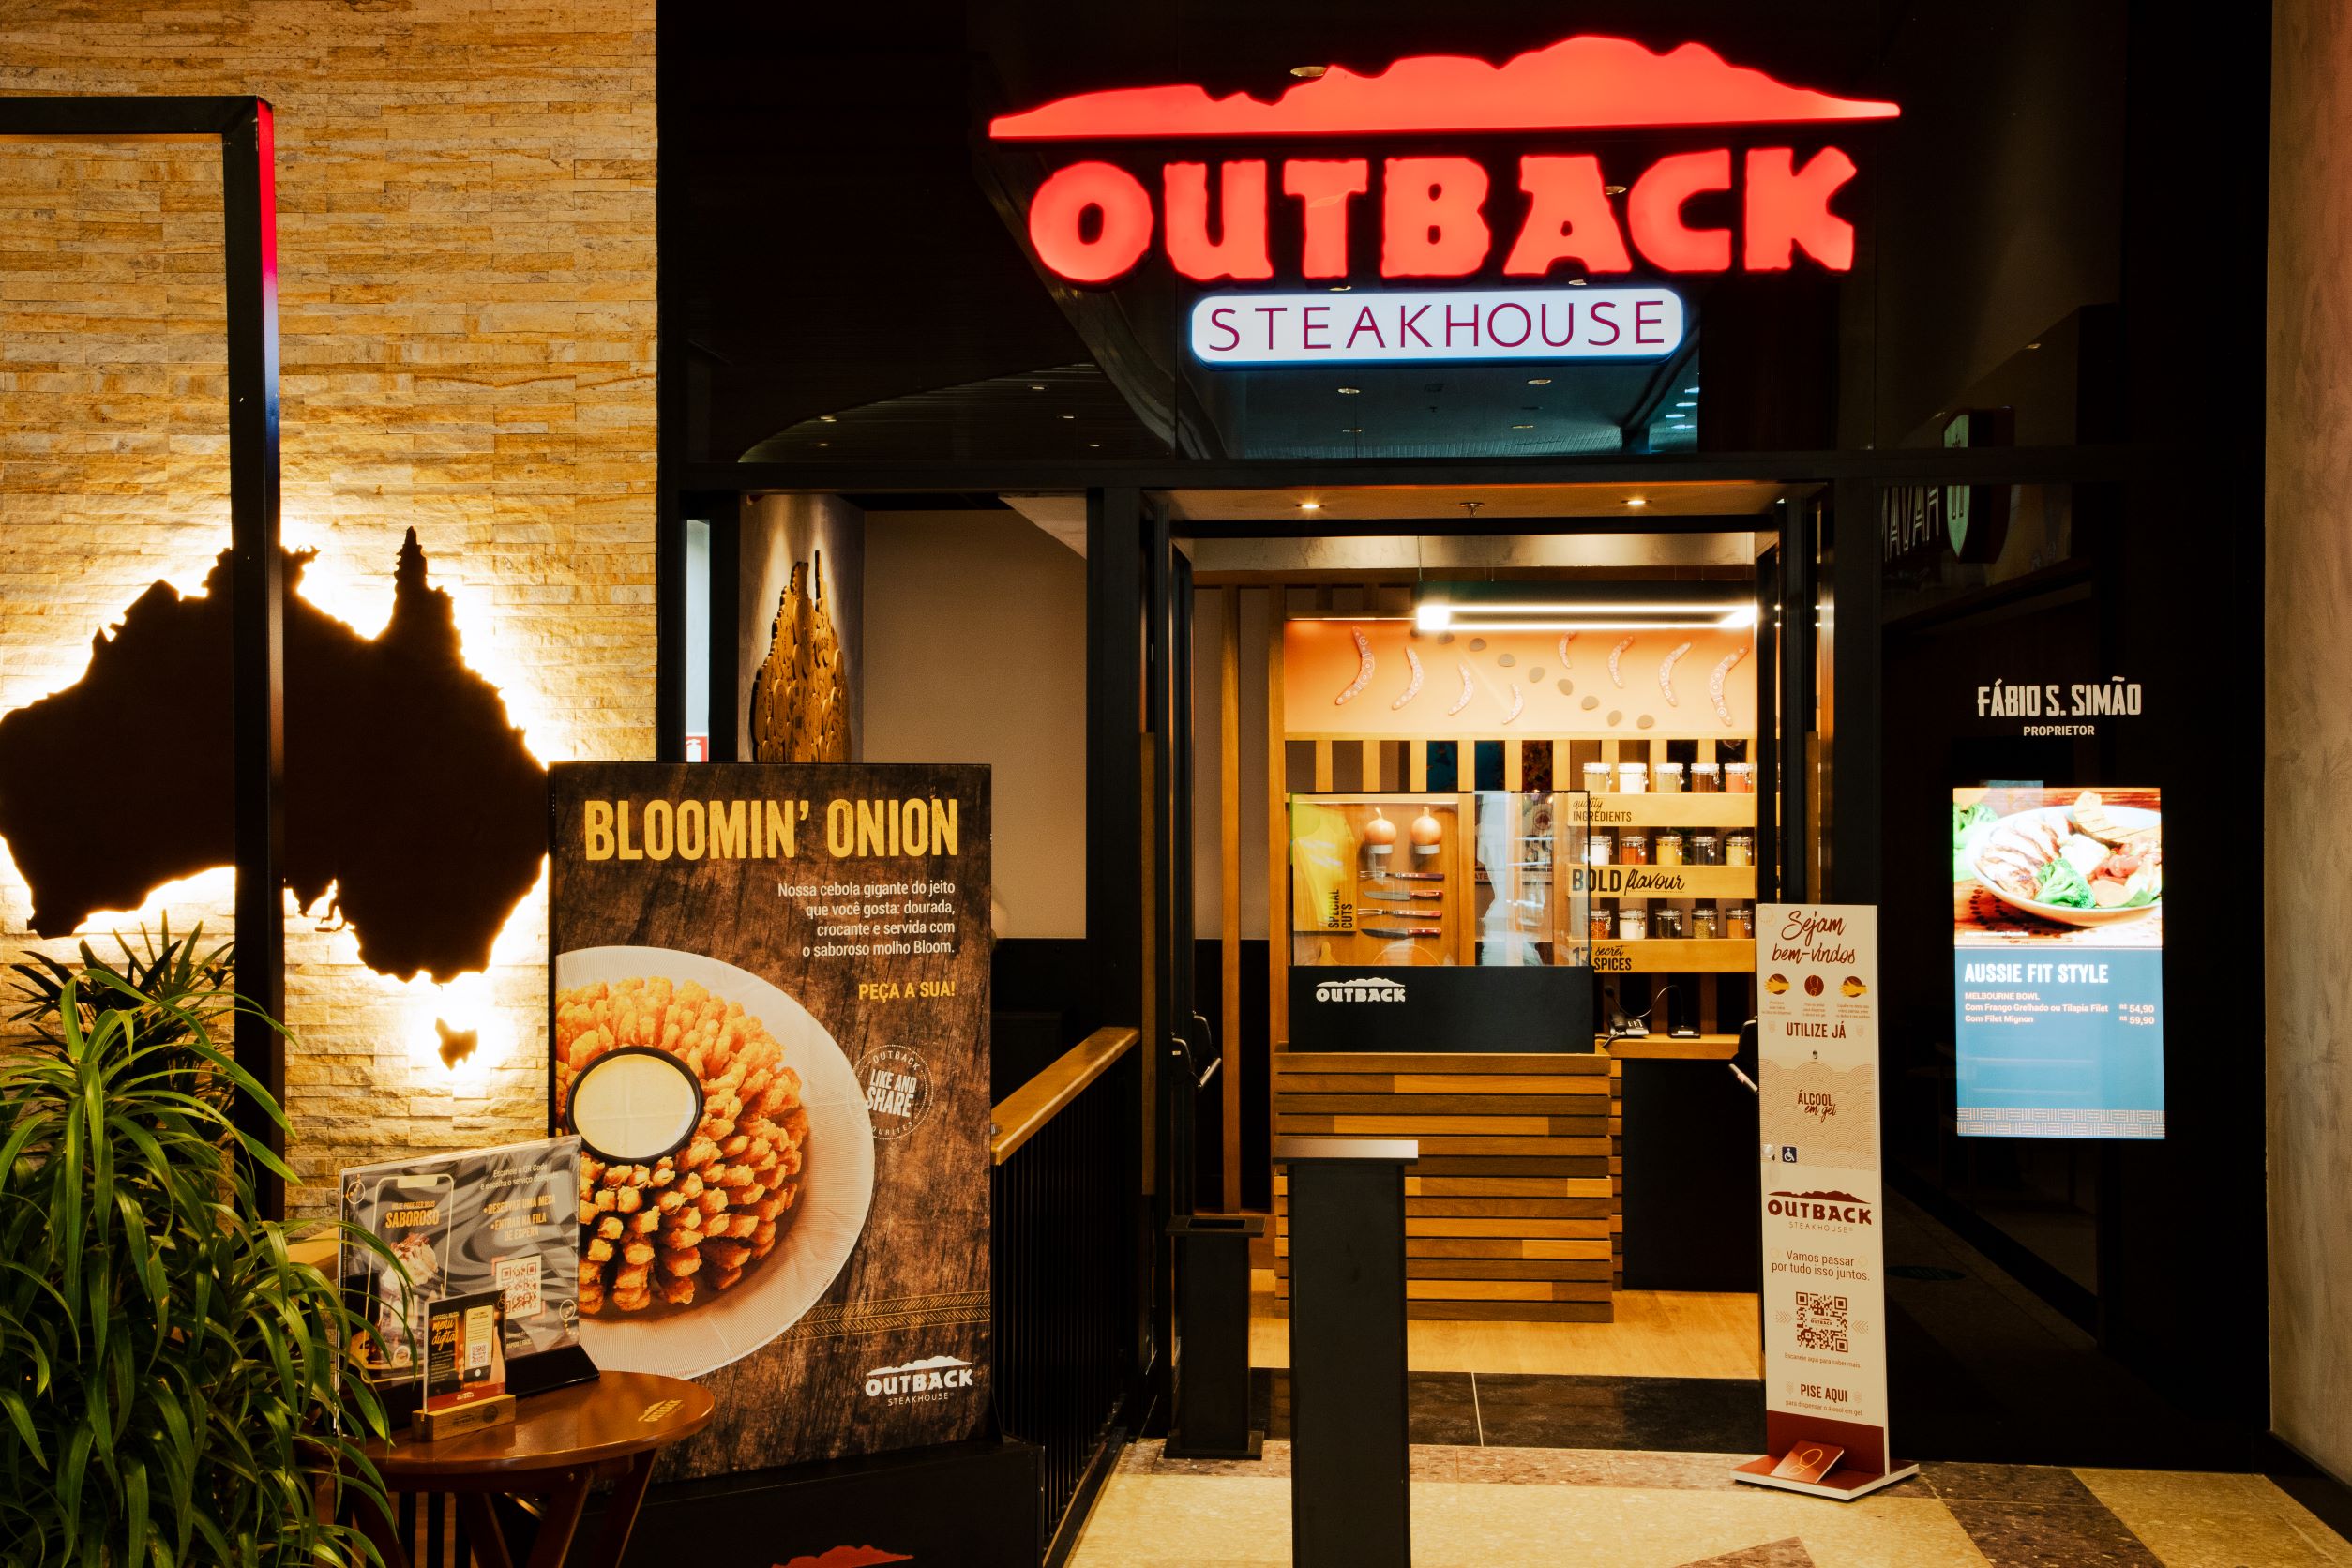 Outback Steakhouse - Les enseignes de distribution préférées des brésiliens